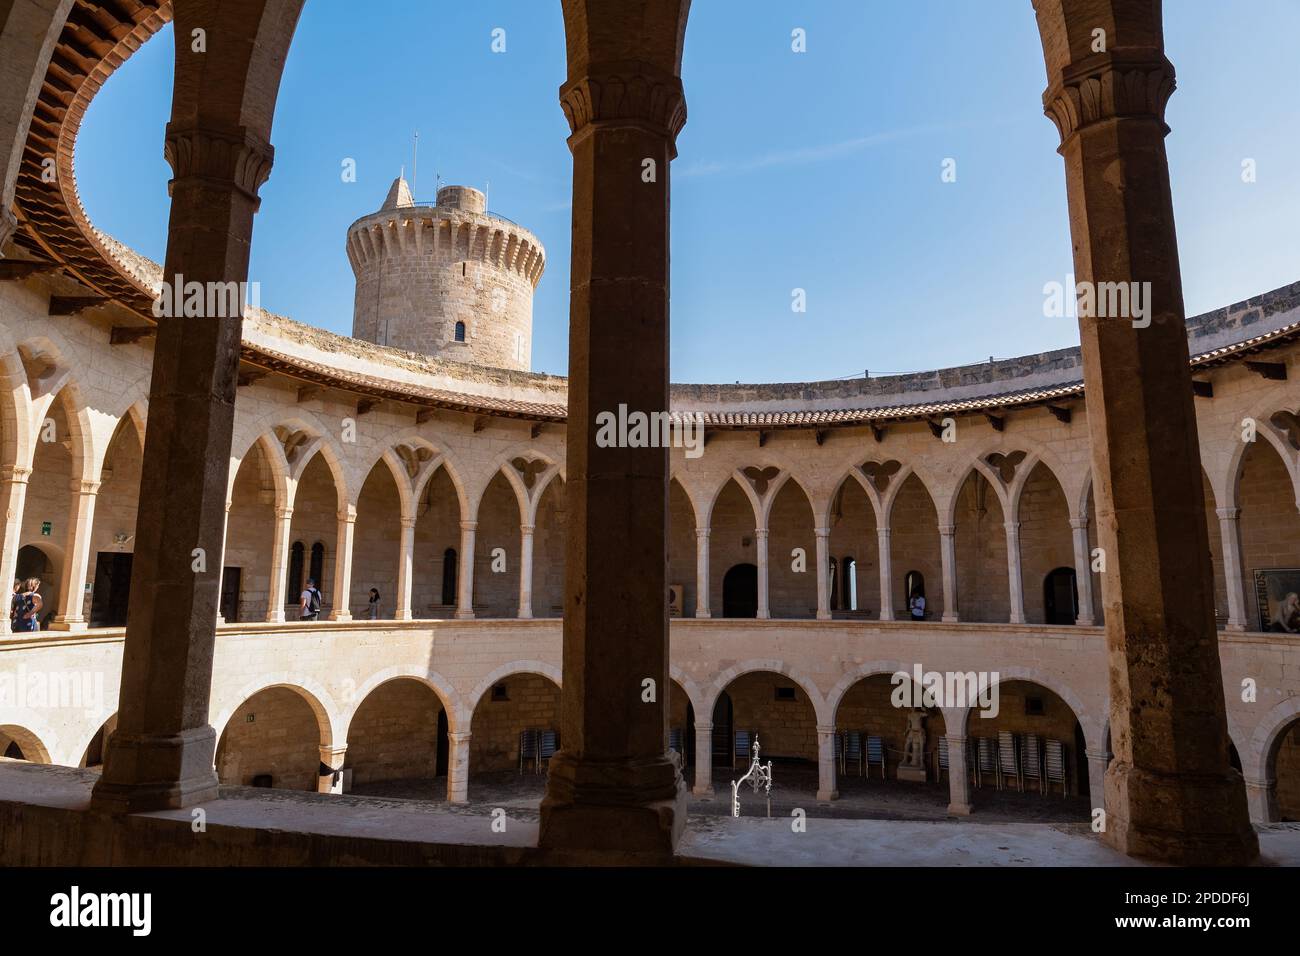 Vue intérieure sur le château de Bellver à Palma de Majorque - Espagne. Banque D'Images